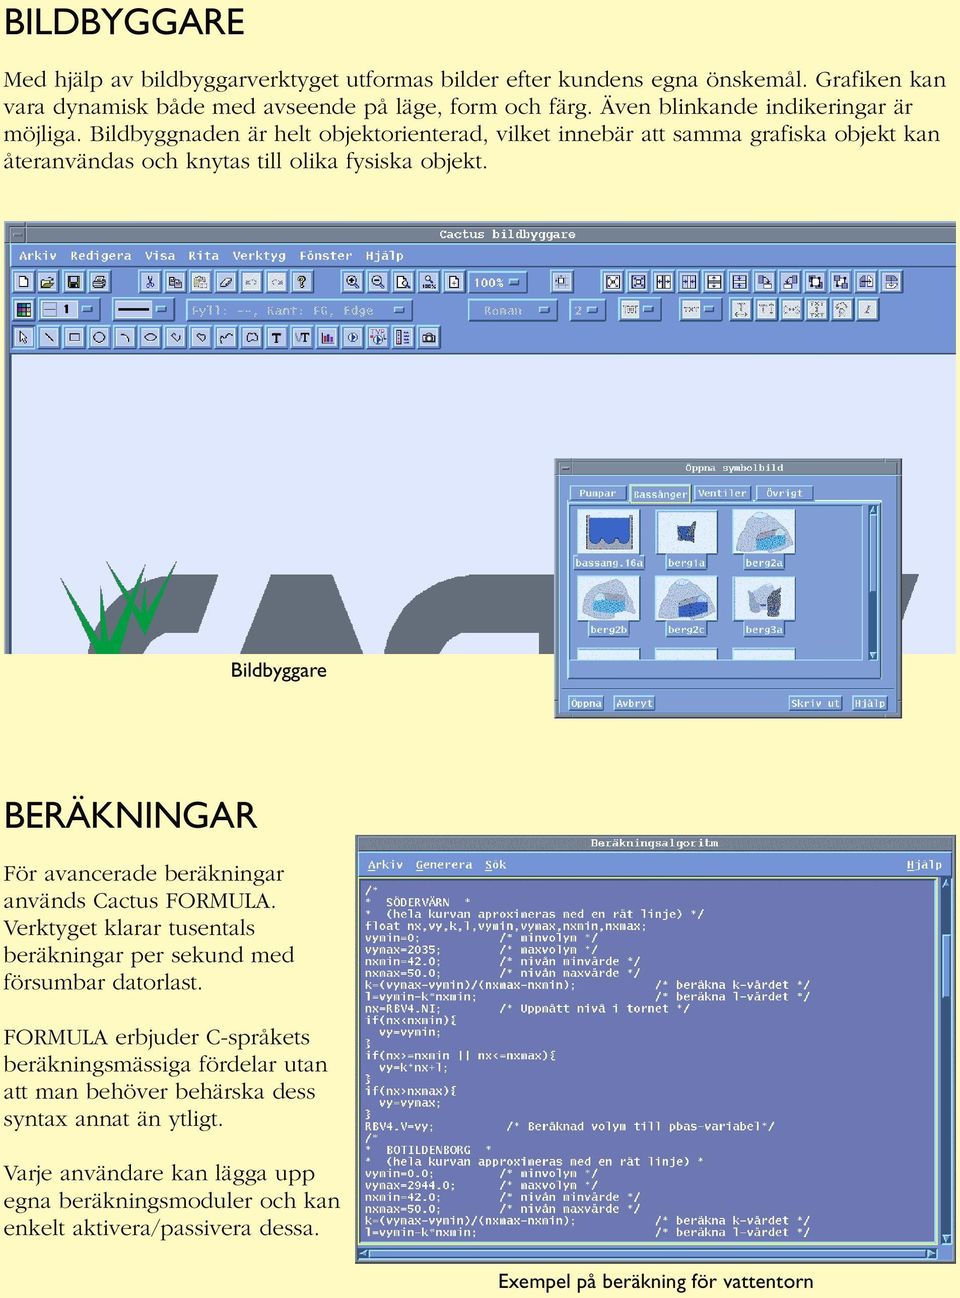 Bildbyggare BERÄKNINGAR För avancerade beräkningar används Cactus FORMULA. Verktyget klarar tusentals beräkningar per sekund med försumbar datorlast.